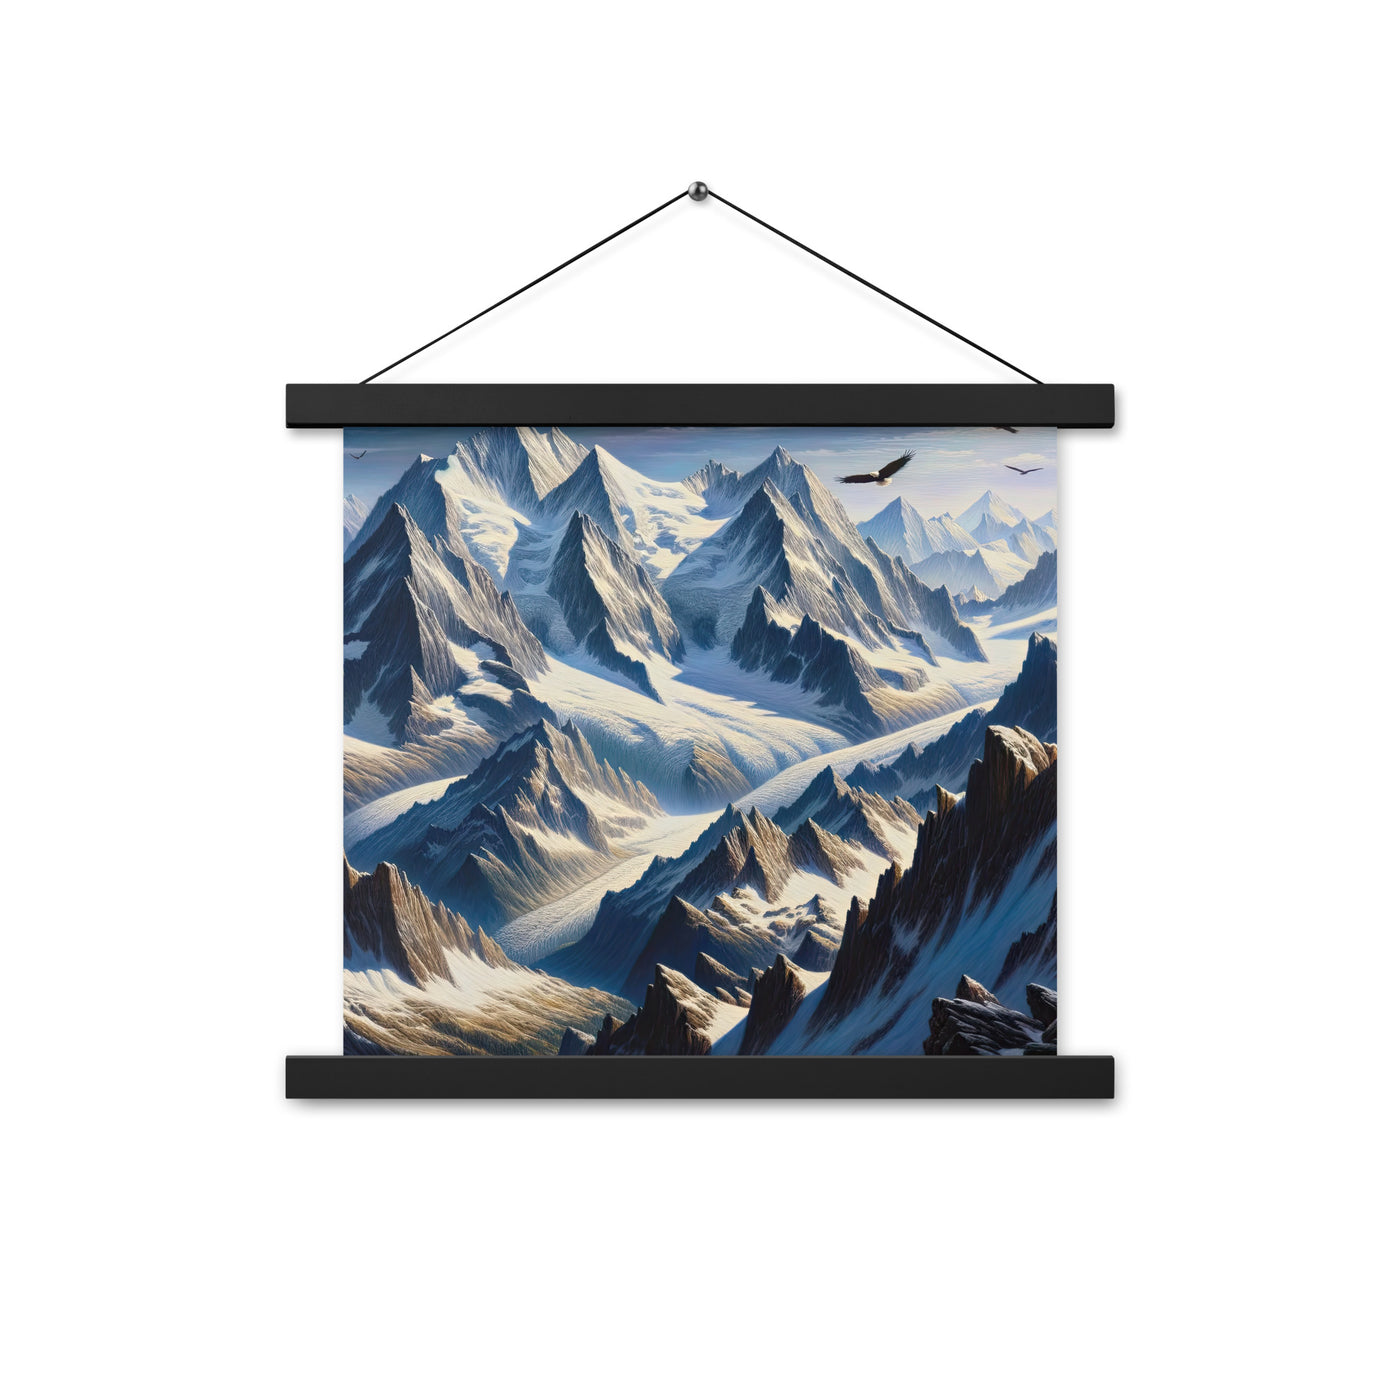 Ölgemälde der Alpen mit hervorgehobenen zerklüfteten Geländen im Licht und Schatten - Premium Poster mit Aufhängung berge xxx yyy zzz 35.6 x 35.6 cm